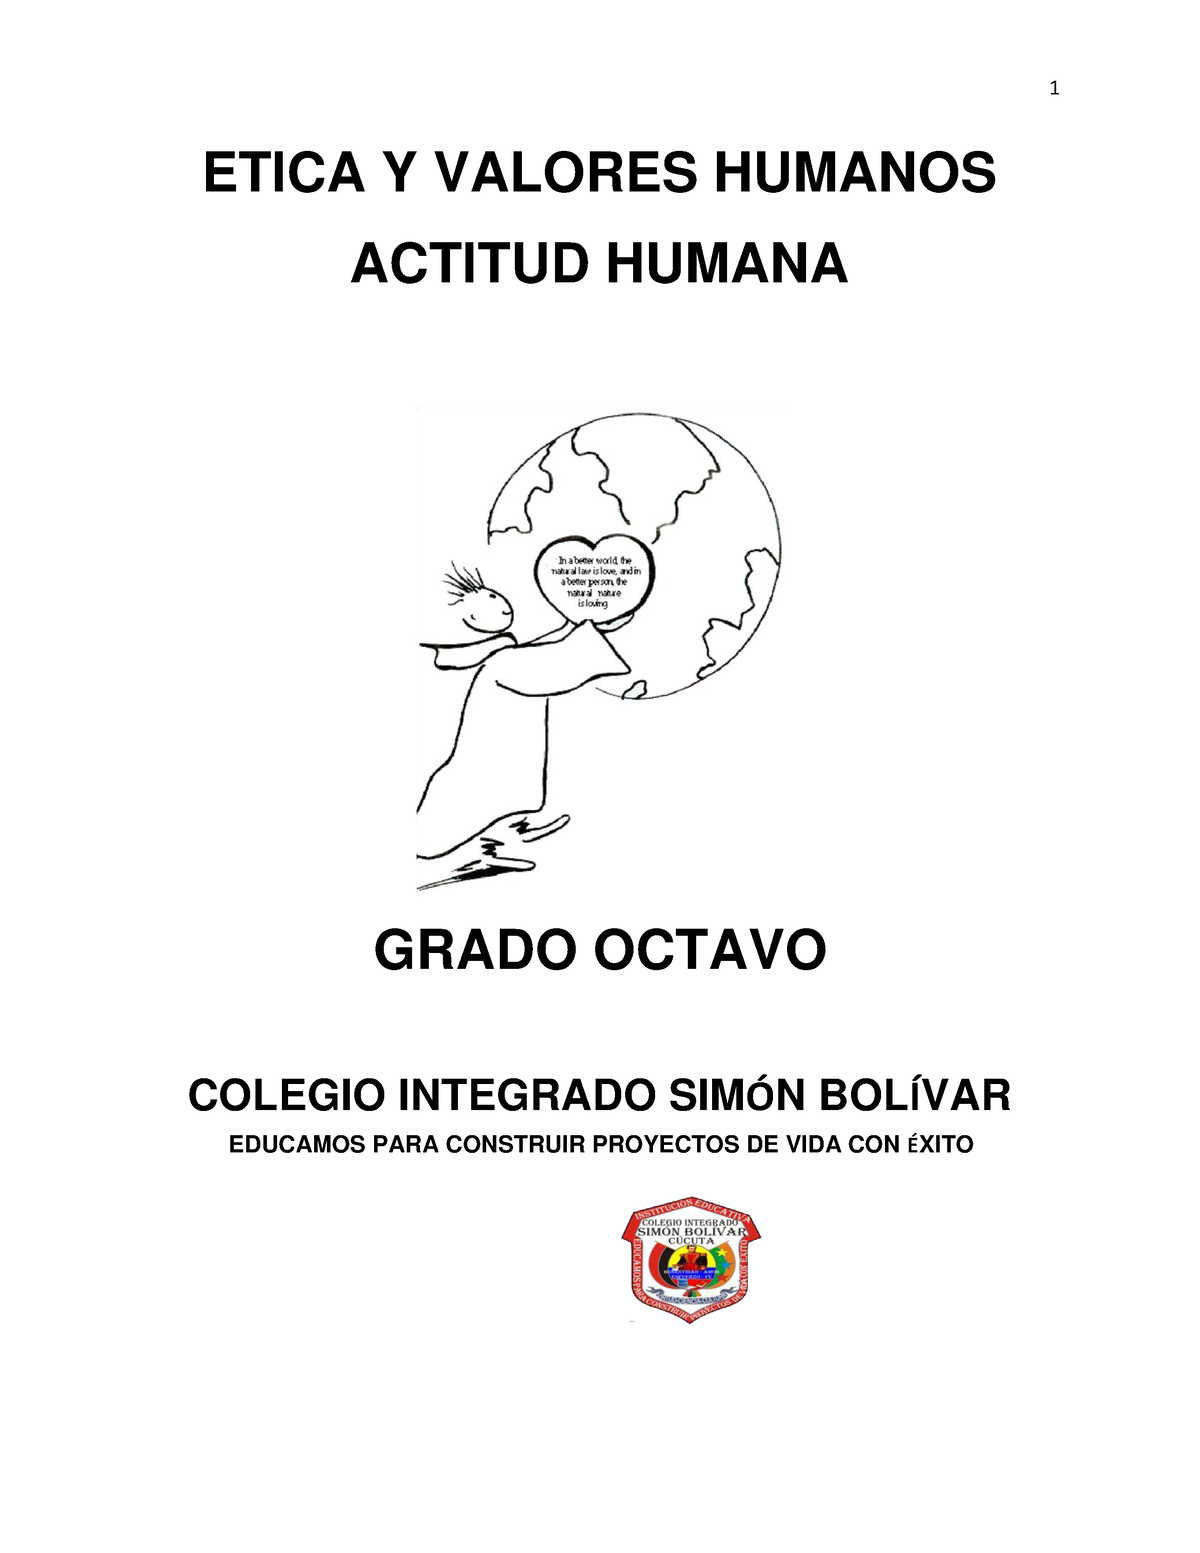 Etica Y Valores Humanos Actitud Humana Etica Y Valores Humanos Actitud Humana Grado Octavo 1551